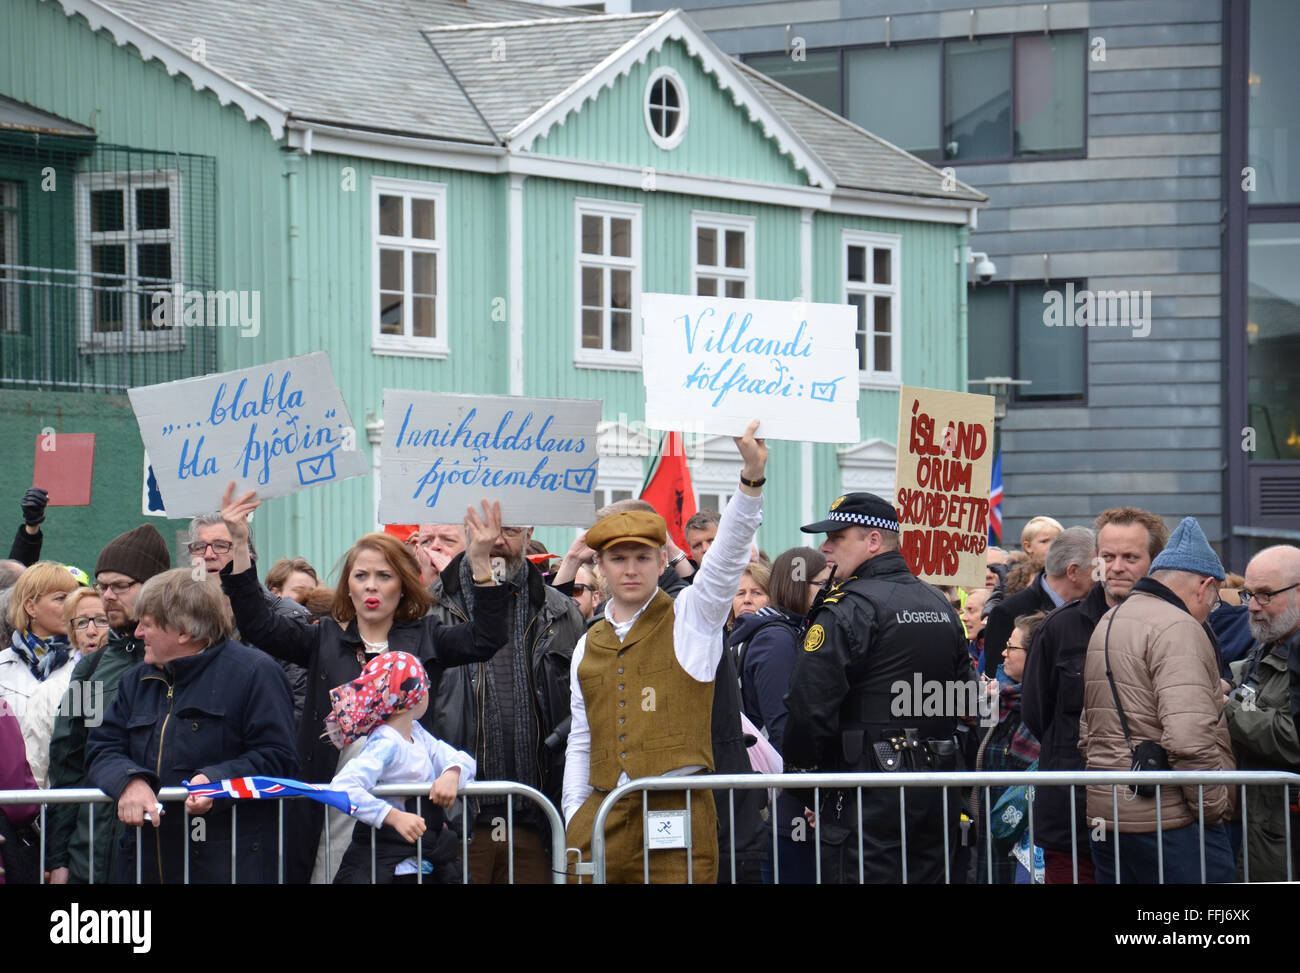 En Reikiavik, Islandia - jun 17: manifestantes sostienen carteles en el día de la independencia en Reykjavik, Islandia el 17 de junio de 2015. Foto de stock